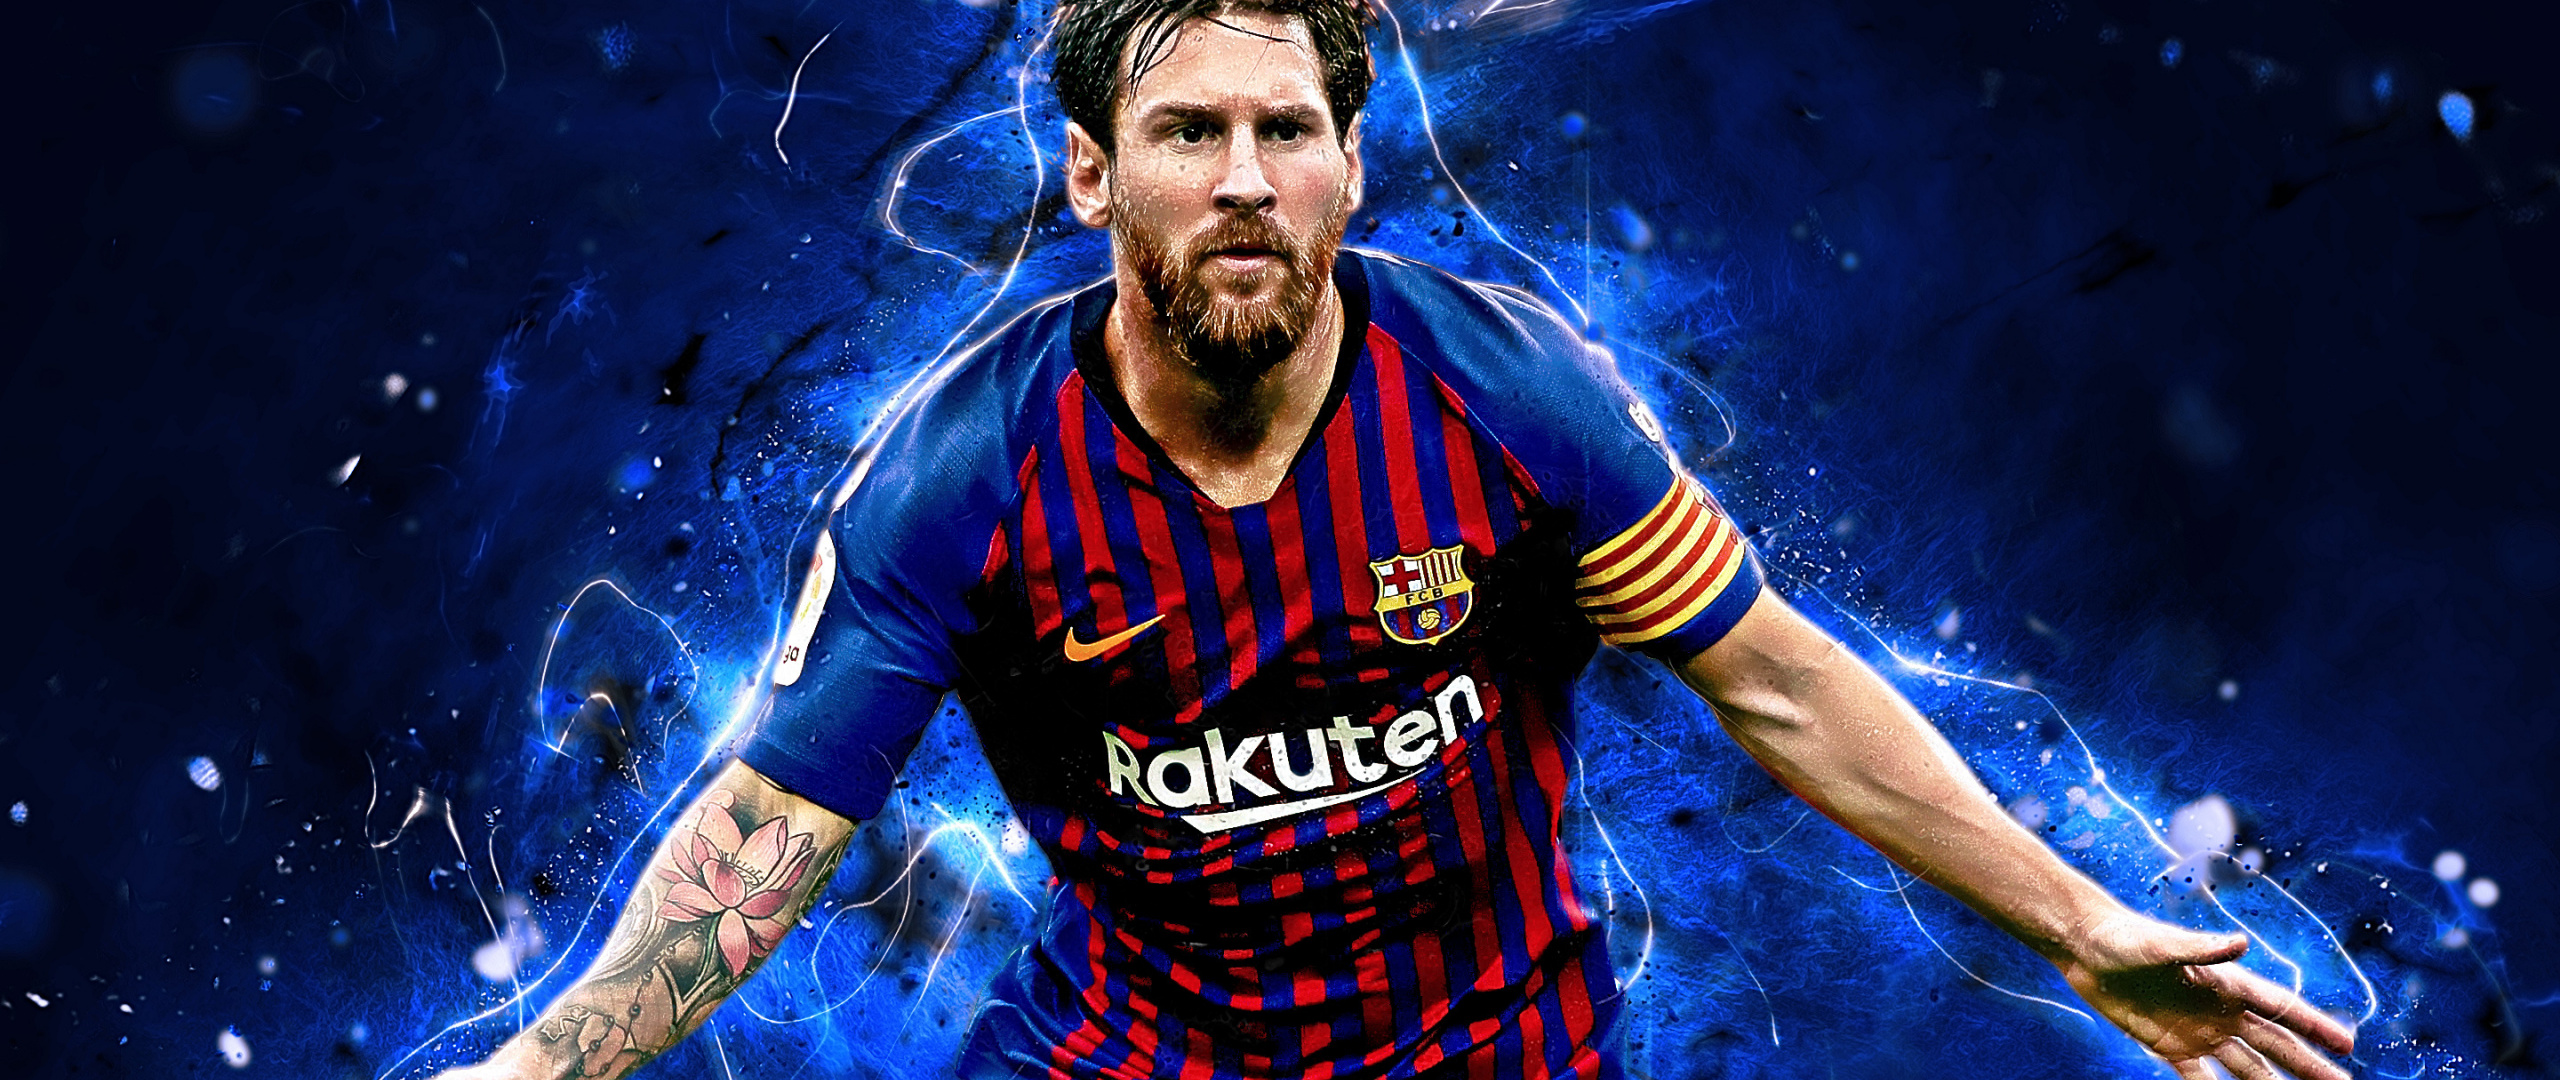 Artwork, Footballer, Celebrity, Lionel Messi, Wallpaper - Messi Wallpaper  For Pc - 2560x1080 Wallpaper 